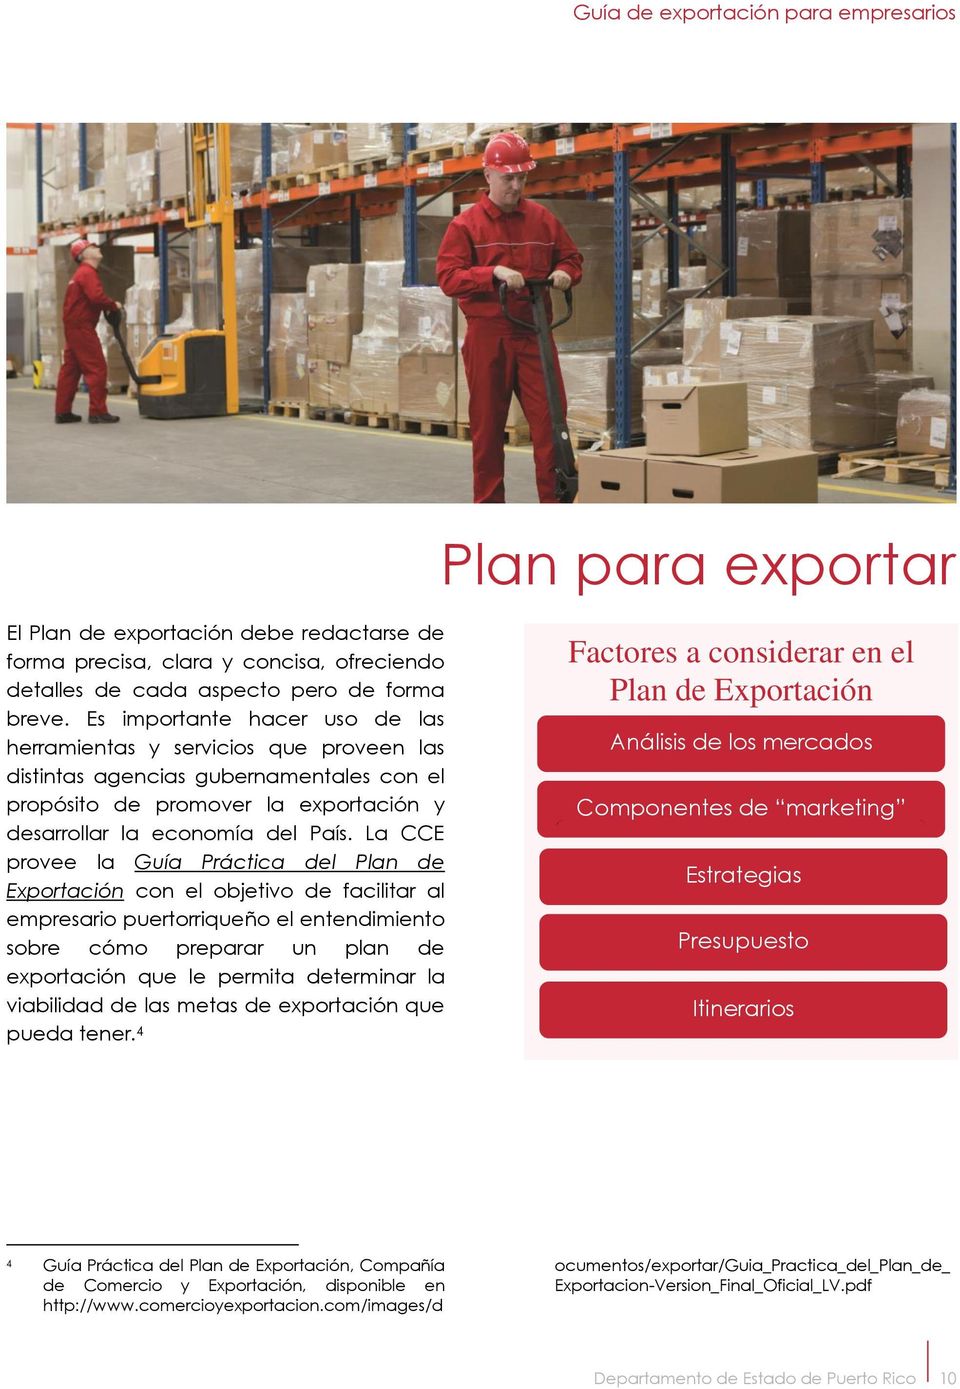 La CCE provee la Guía Práctica del Plan de Exportación con el objetivo de facilitar al empresario puertorriqueño el entendimiento sobre cómo preparar un plan de exportación que le permita determinar